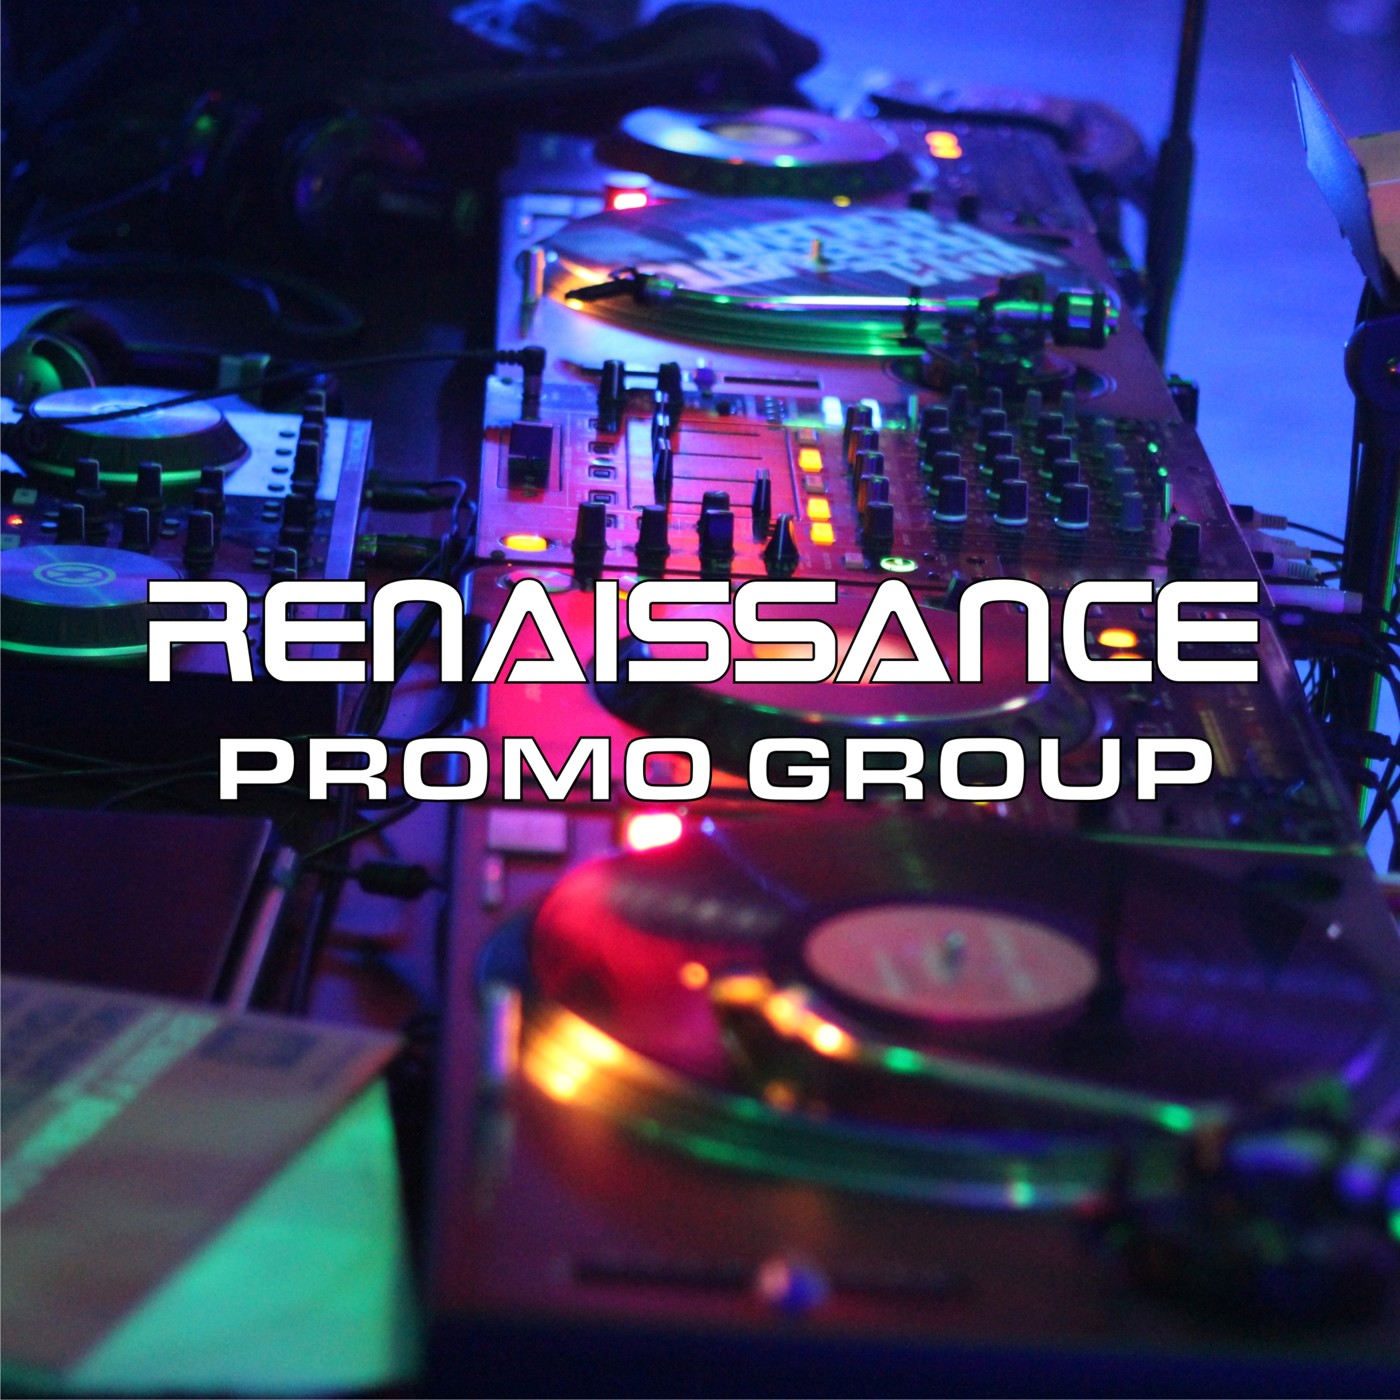 Renaissance Promo Group